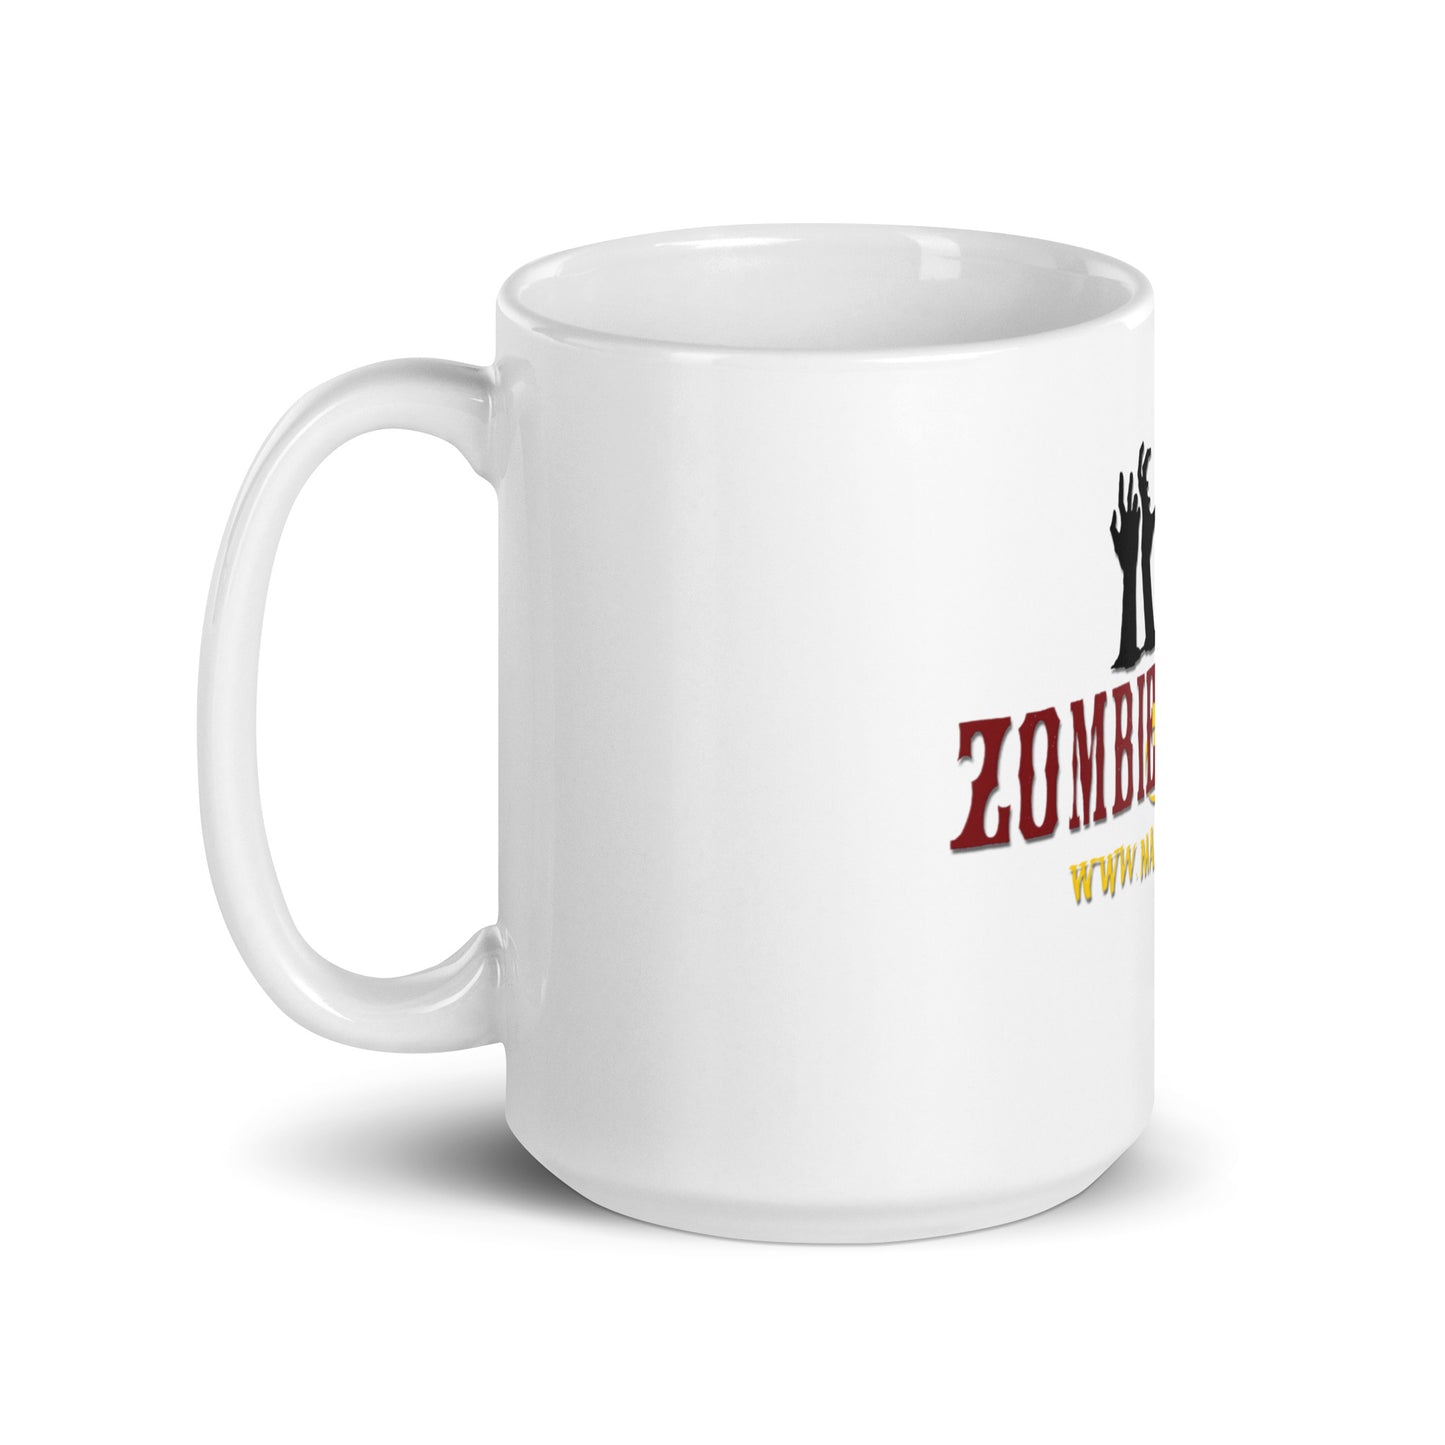 Zombie Fallout Mug